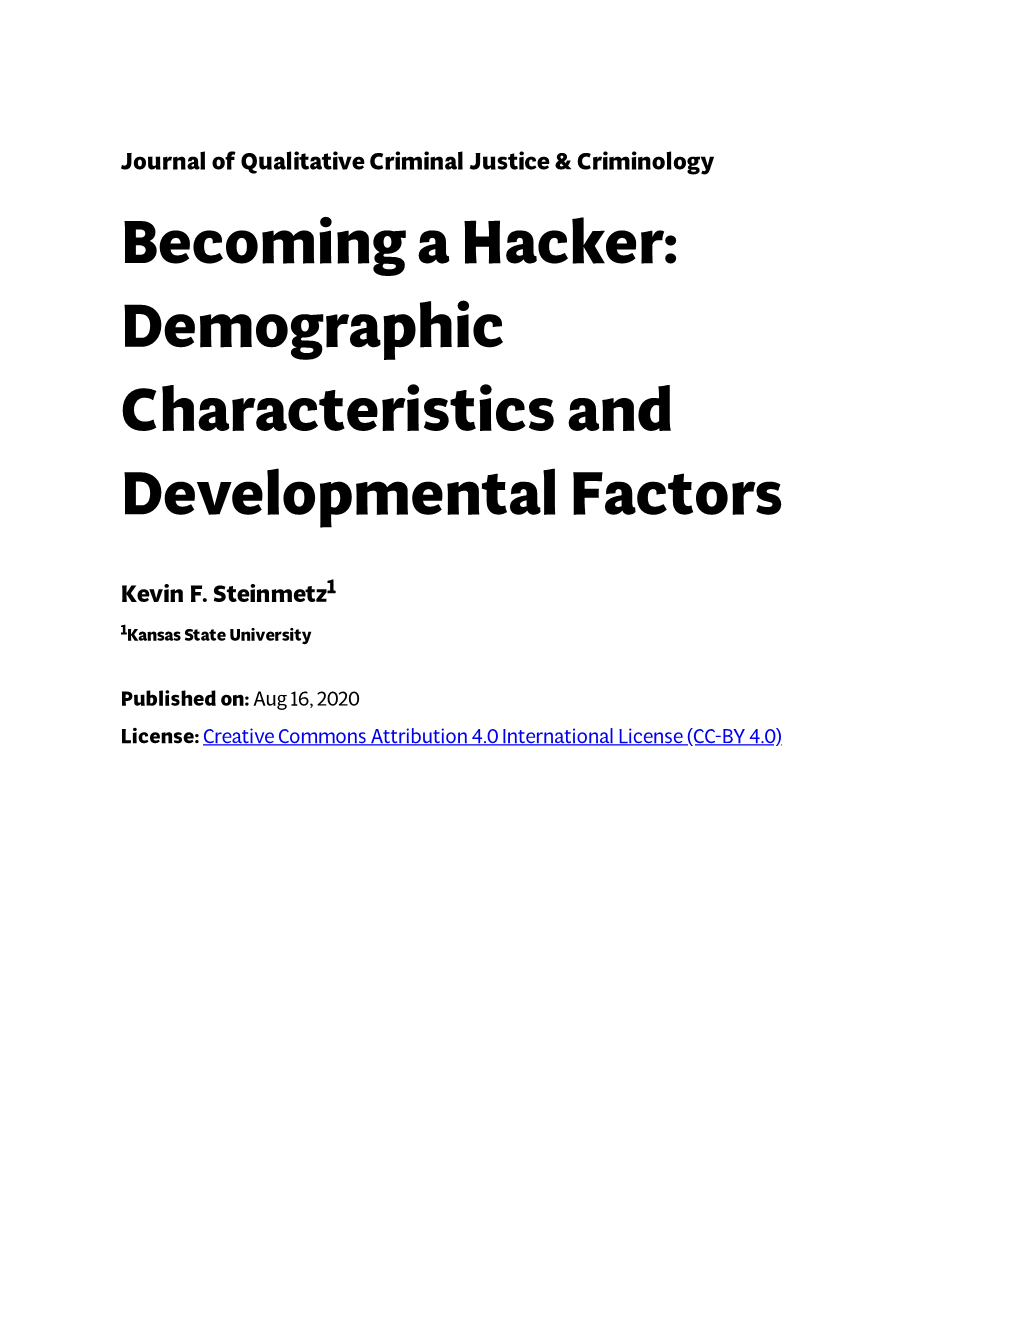 Becoming a Hacker: Demographic Characteristics and Developmental Factors